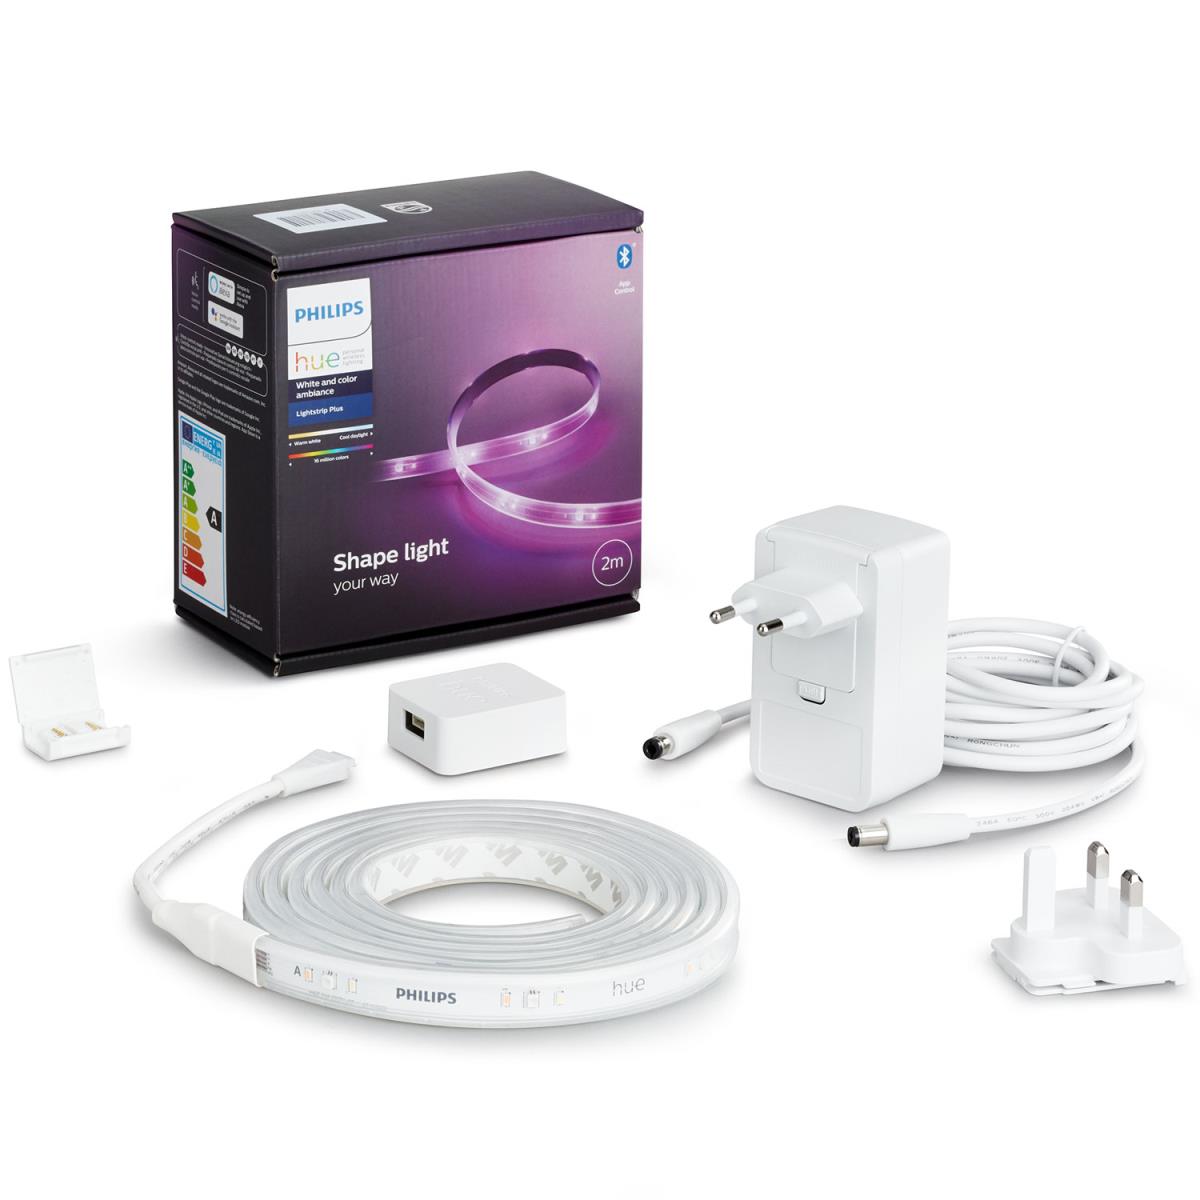 Philips: Hue LightStrip Plus V4 2m base kit with plug